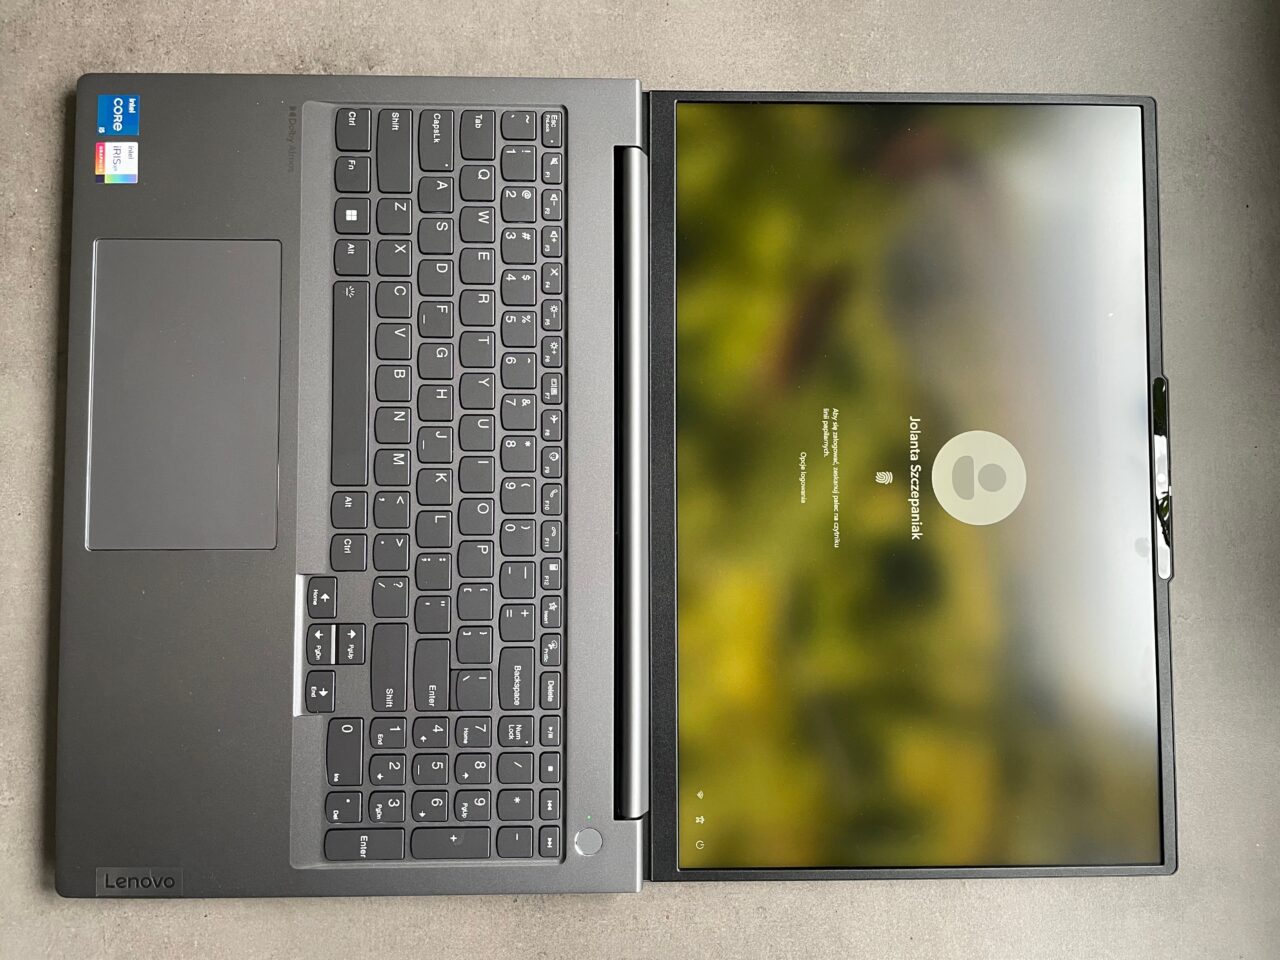 Otwarty laptop marki Lenovo na szarym blacie, z widoczną klawiaturą i ekranem logowania systemu Windows, rozmytym tłem i wskazującym na użytkownika kółkiem.